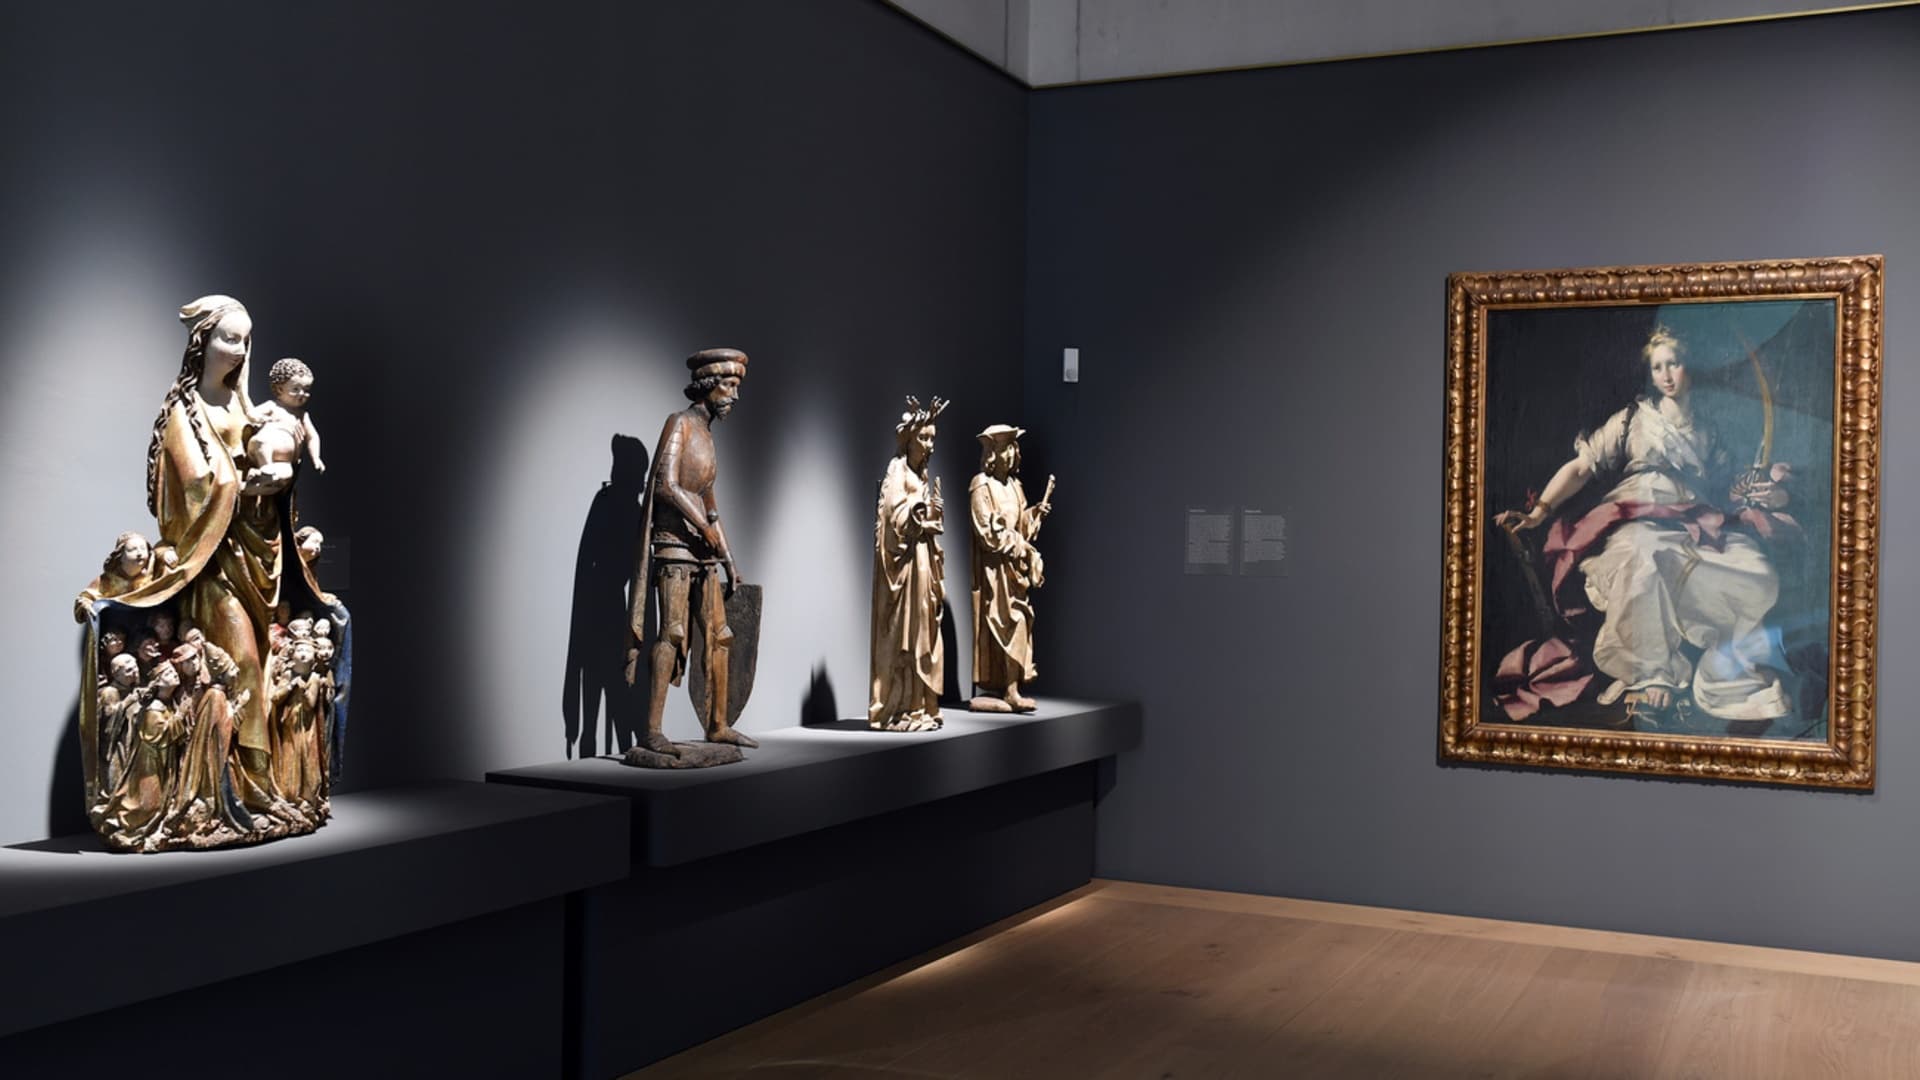 Zsidóktól elrabolt képek a legnagyobb svájci múzeumban